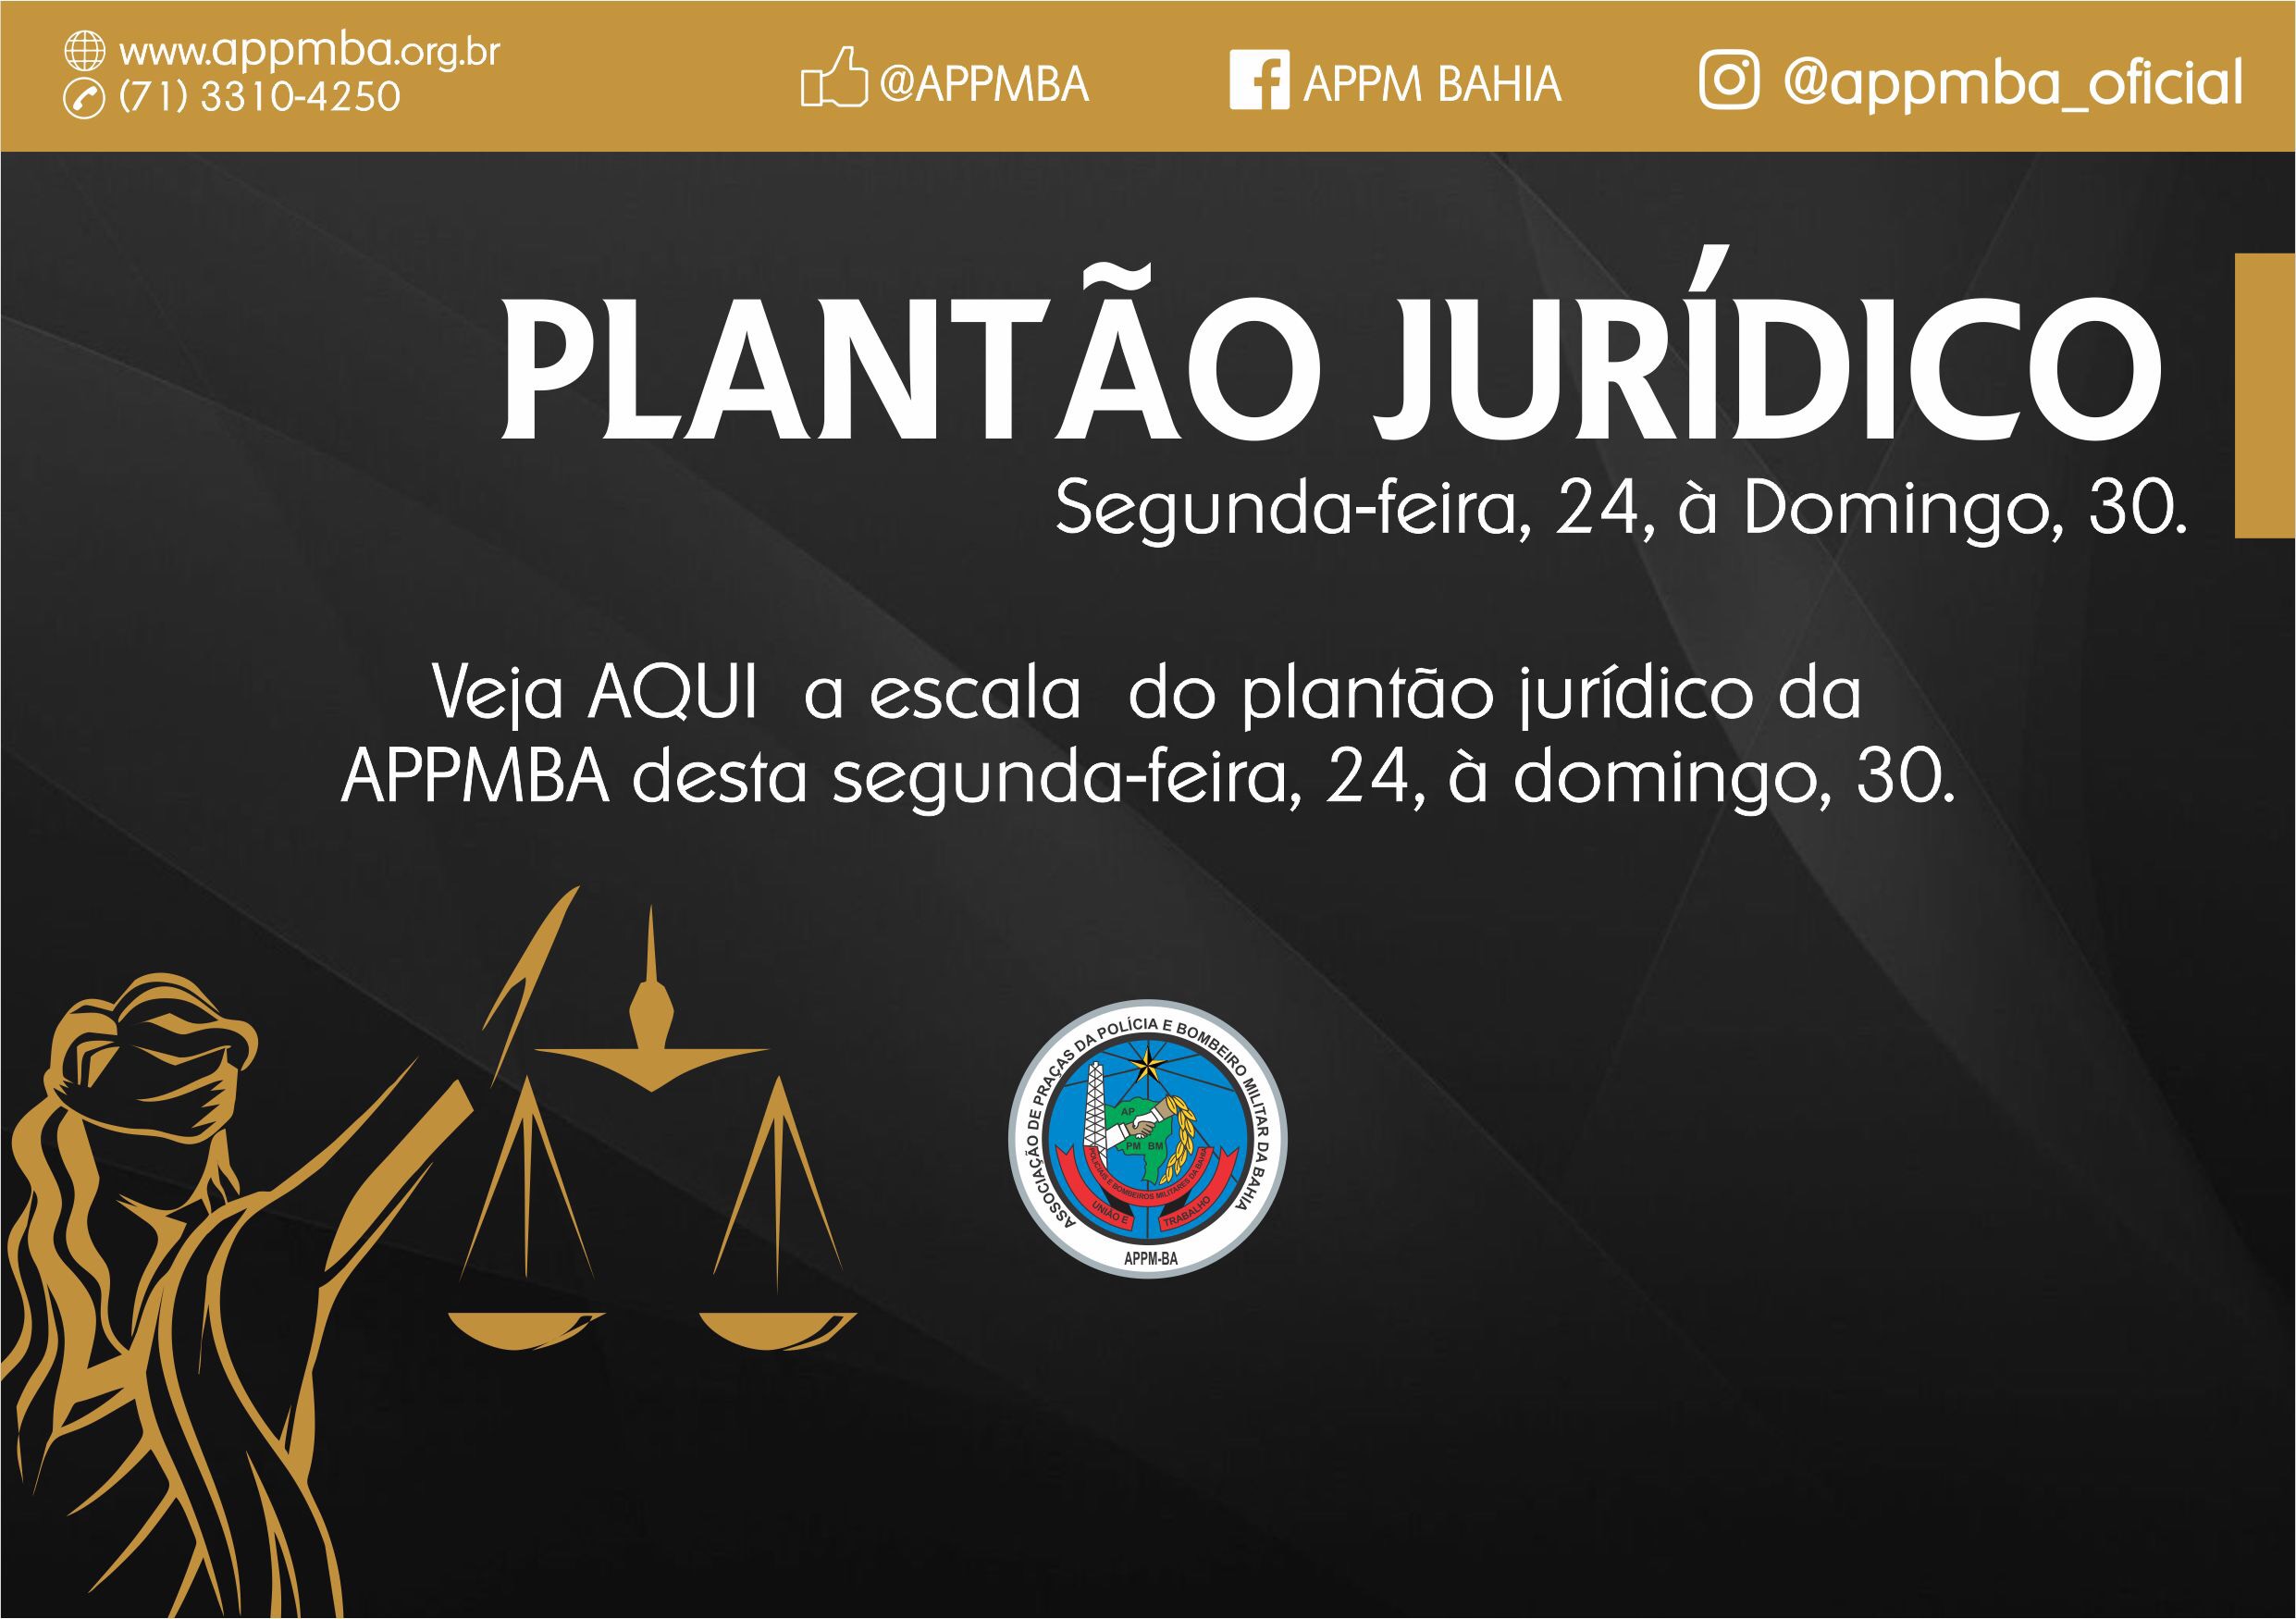 Plantão Jurídico APPM-BA, dias 24 à 30/9/2018